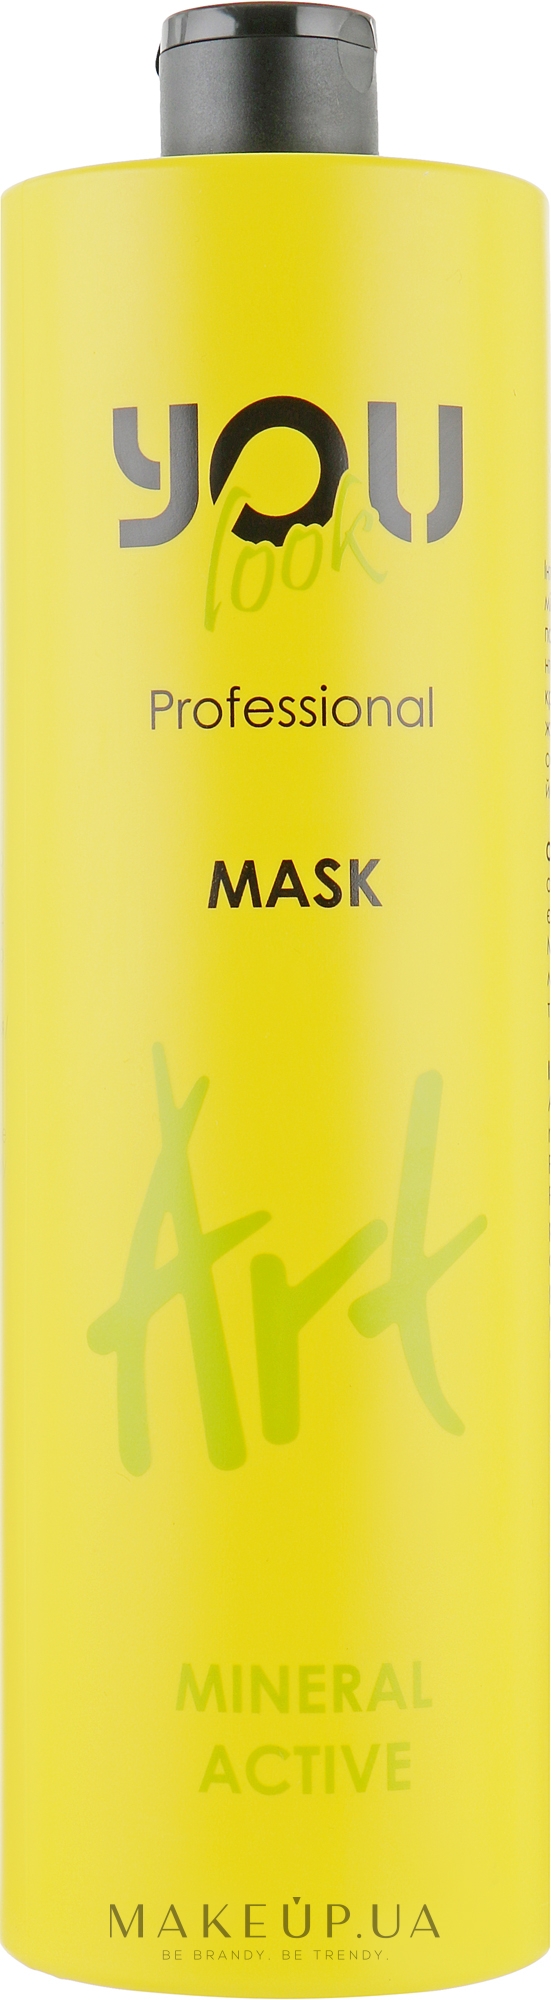 Маска для сухих, ломких и ослабленных волос с минералами - You Look Professional Art Mineral Active Mask — фото 1000ml